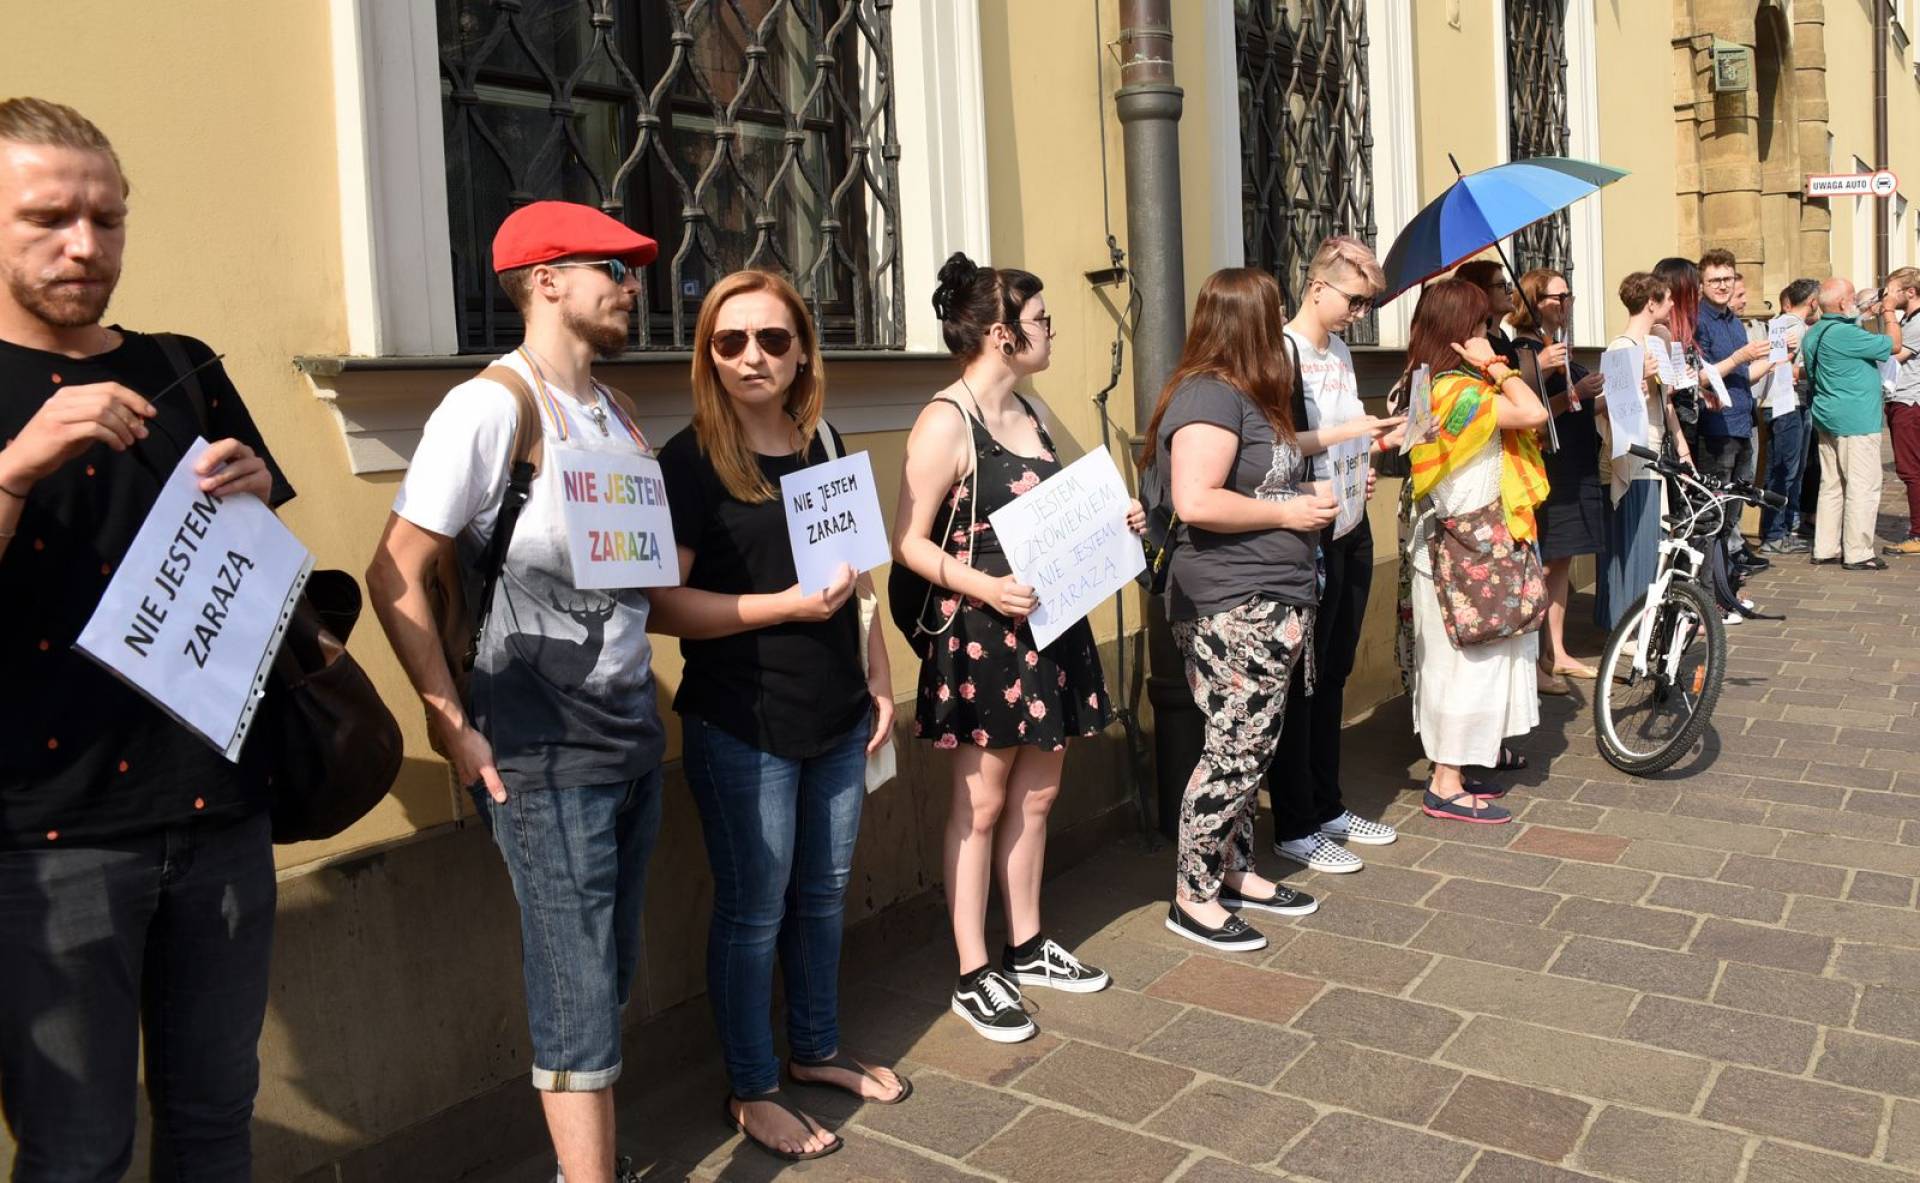 Niemy protest przed krakowską kurią po skandalicznej wypowiedzi metropolity